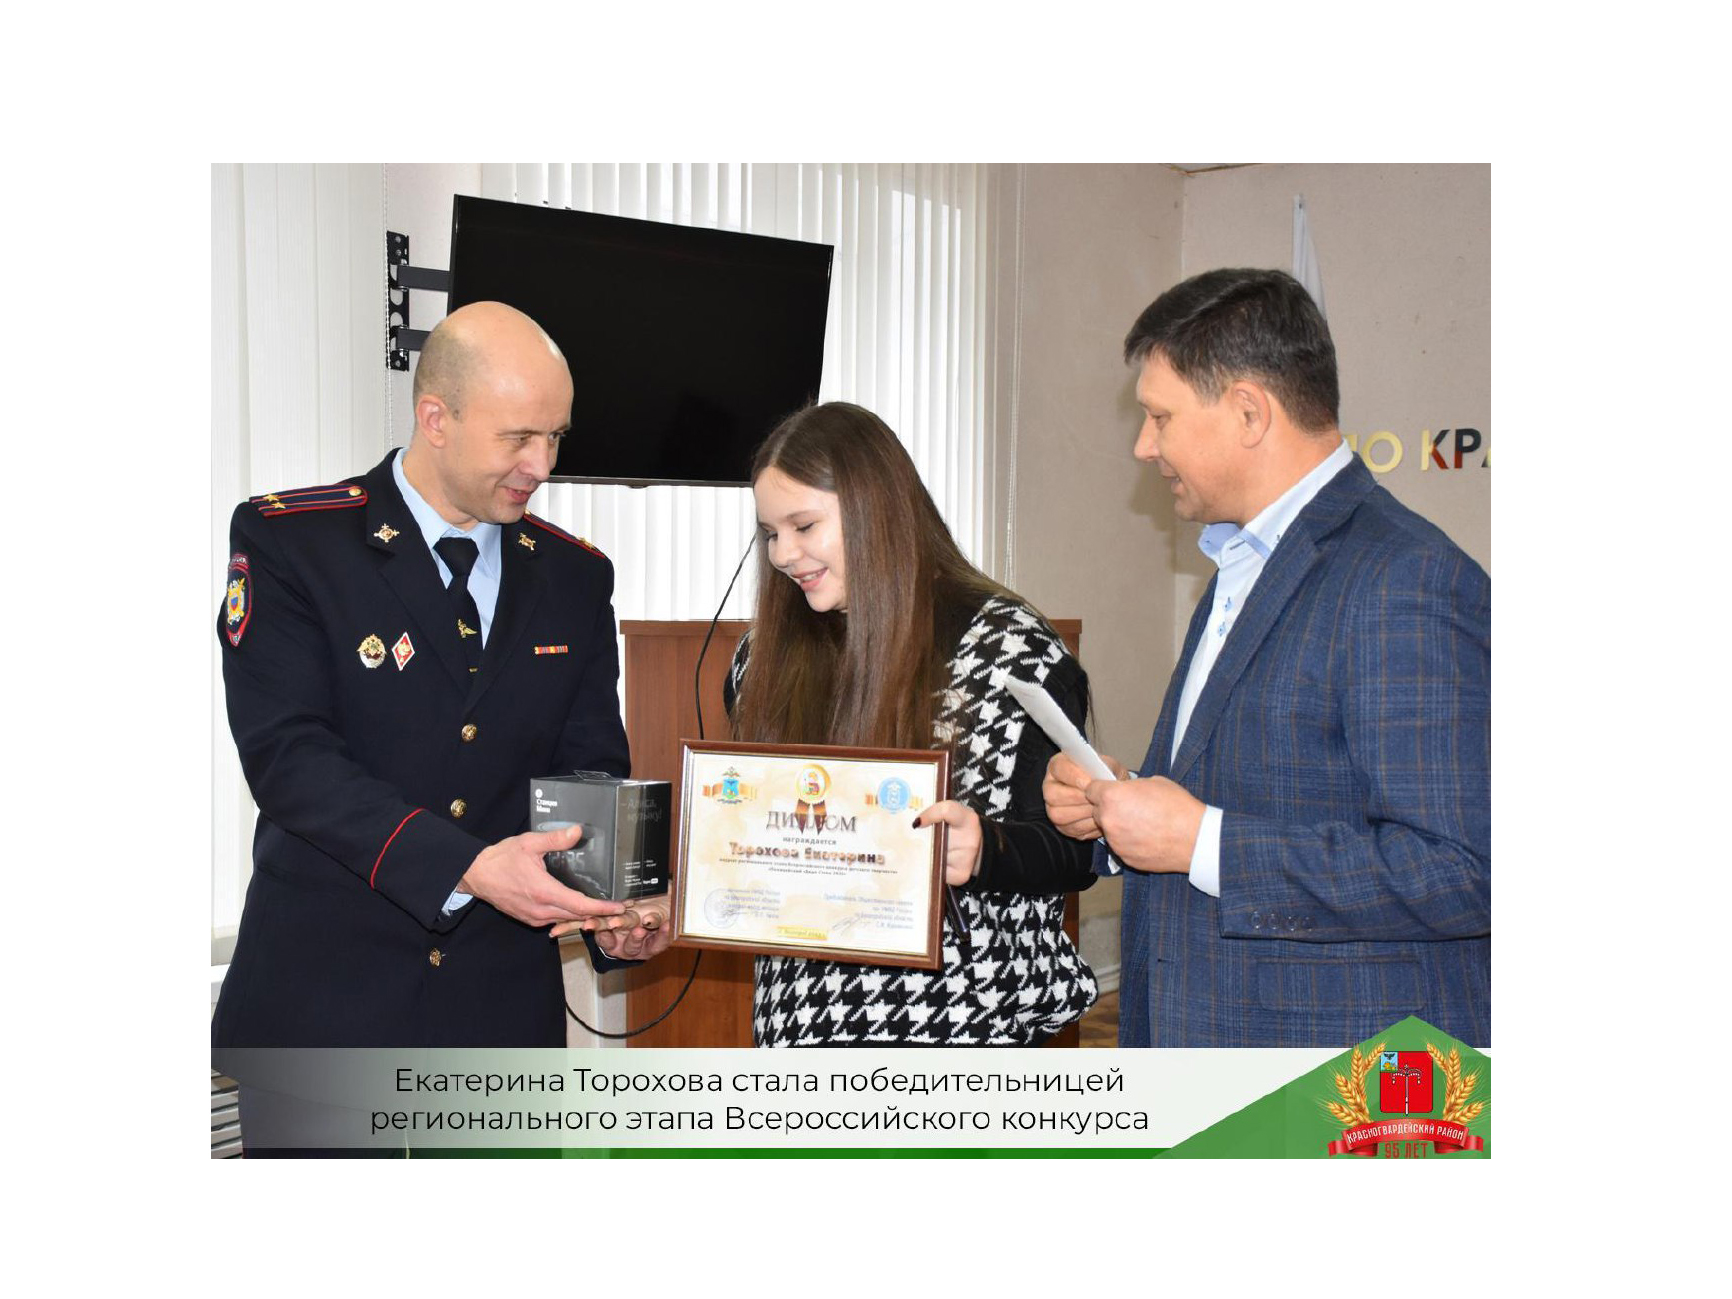 Екатерина Торохова стала победительницей регионального этапа Всероссийского конкурса «Полицейский дядя Стёпа».